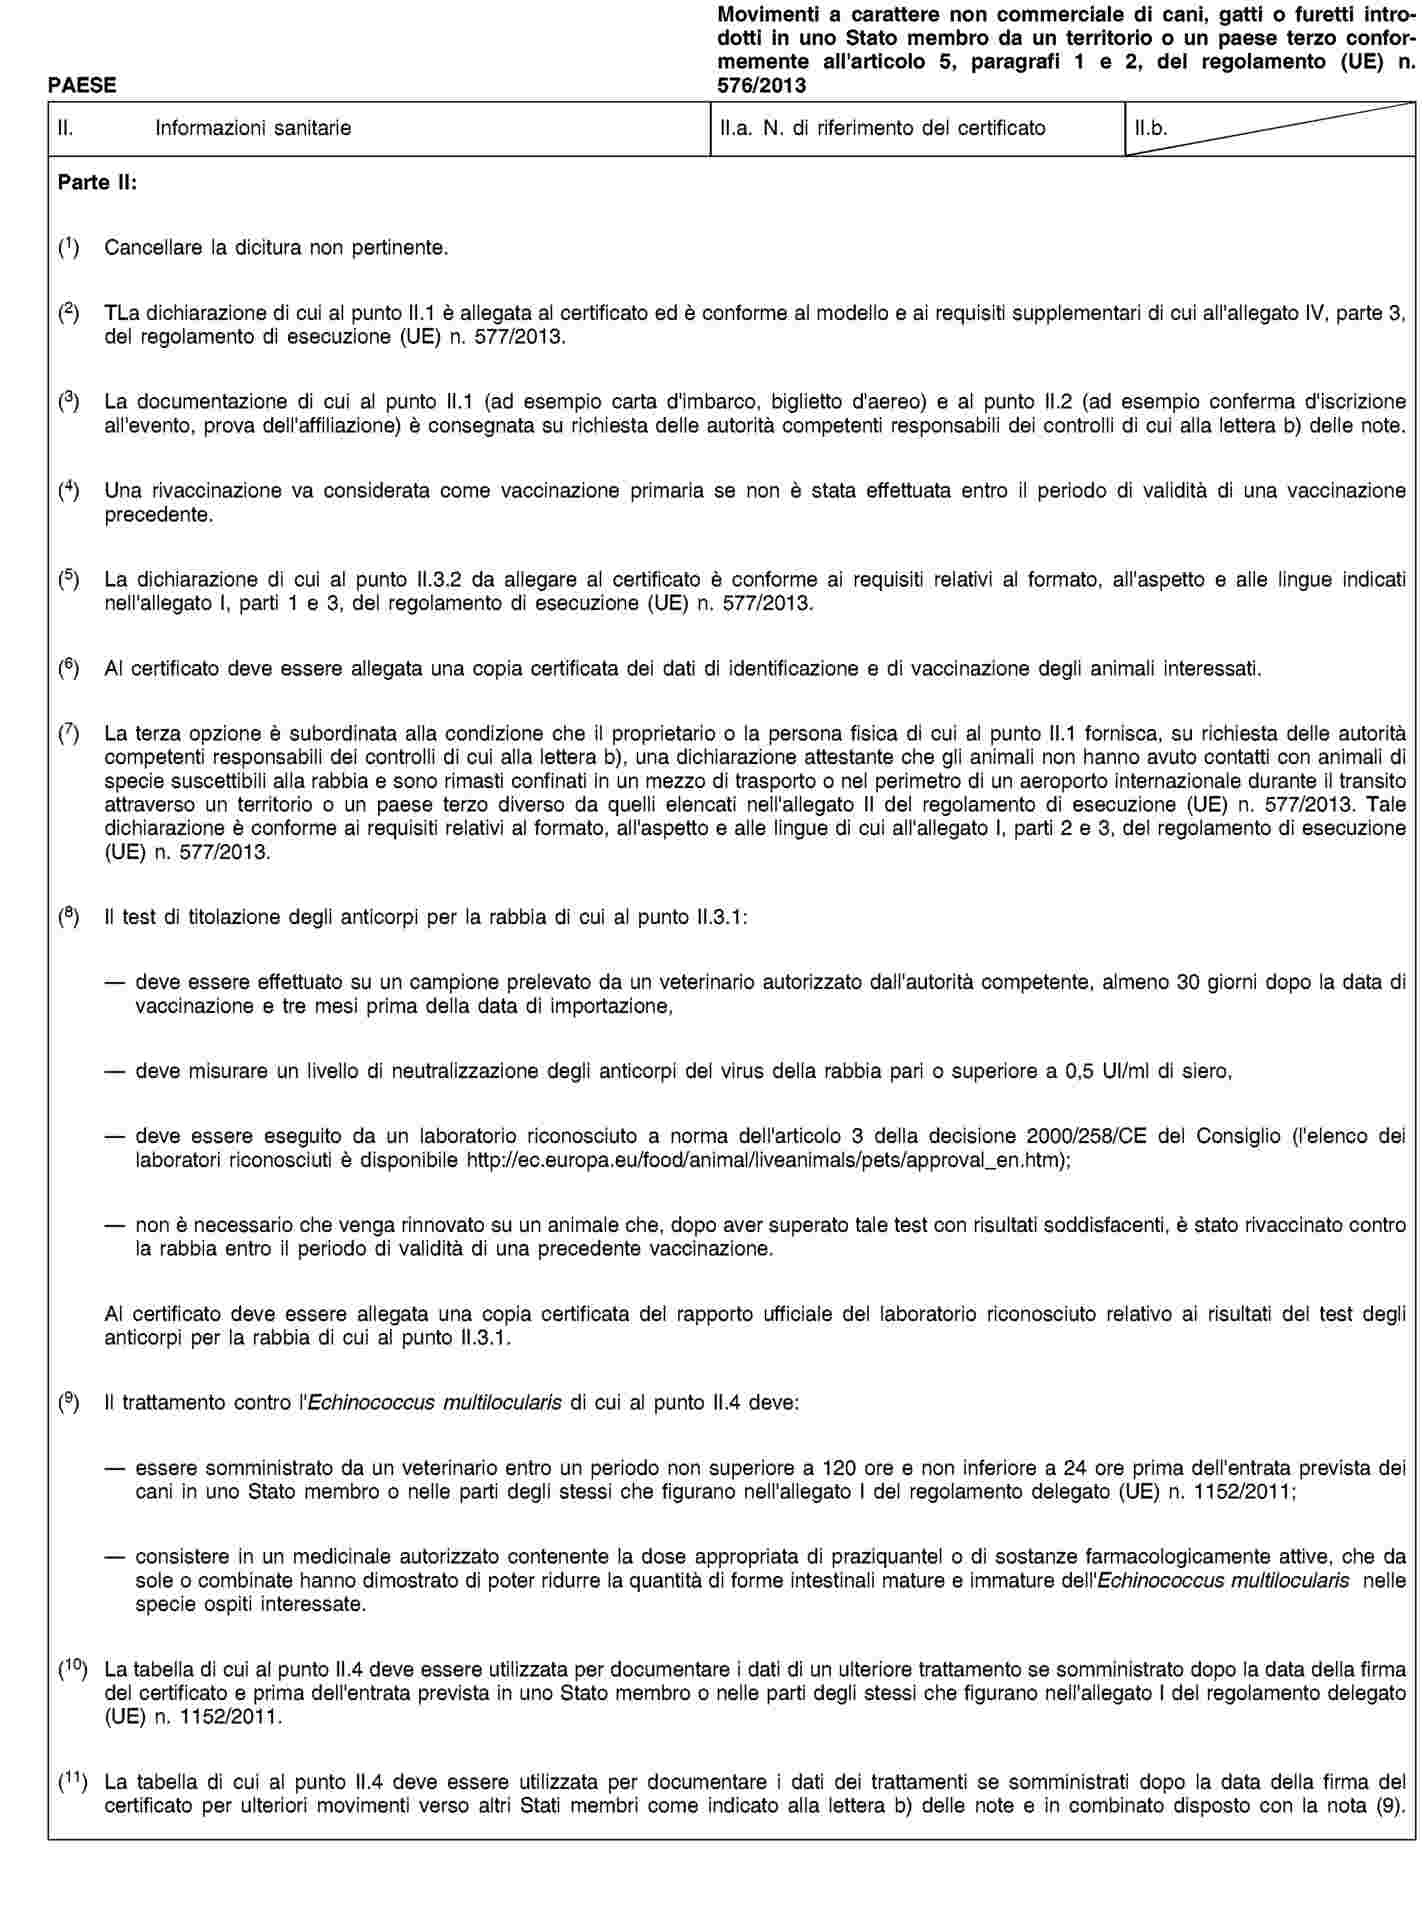 Regolamento di esecuzione - 577/2013 - EN - EUR-Lex